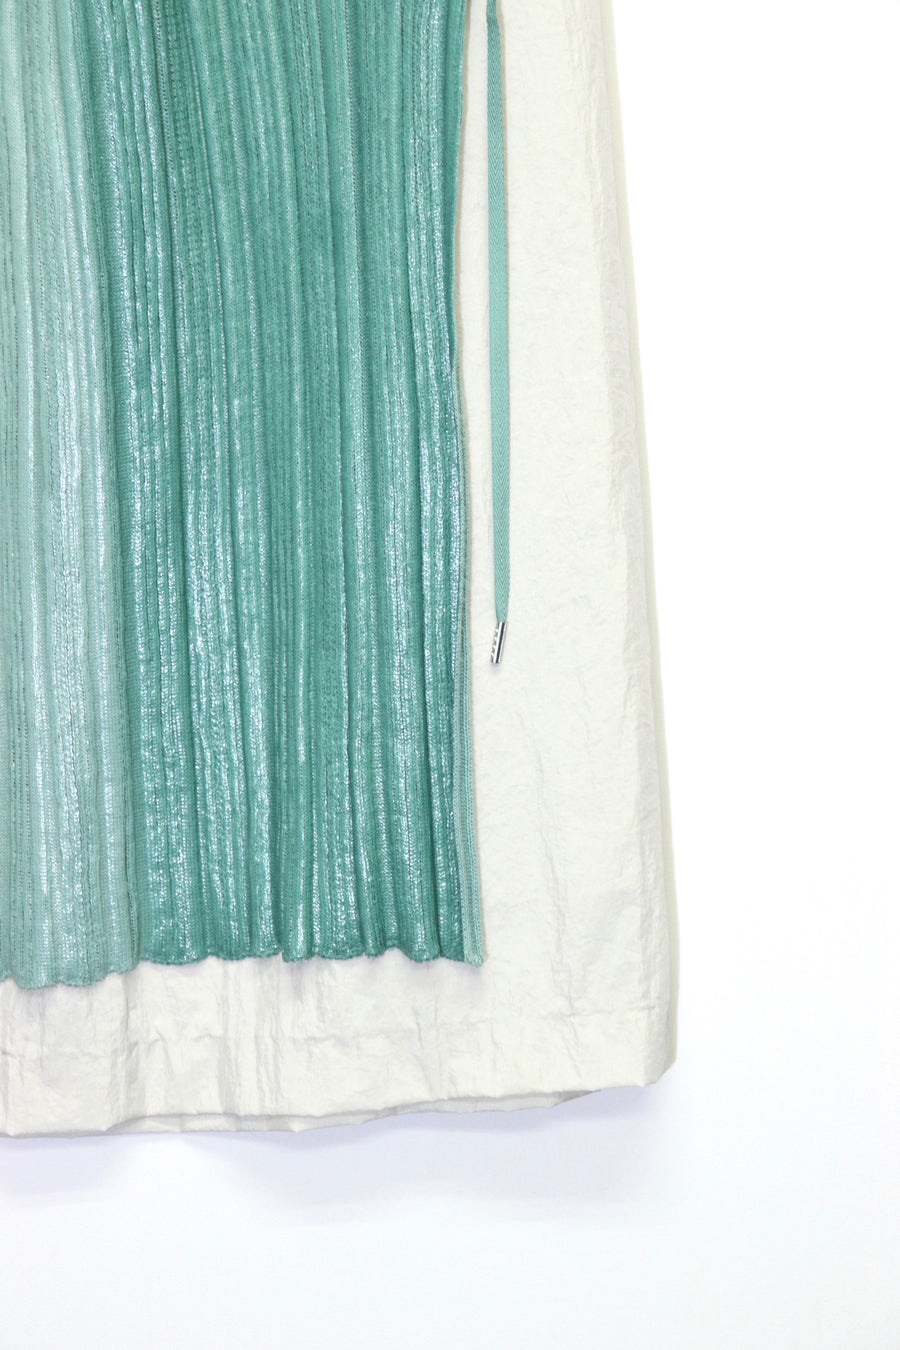 tiit tokyo  gradation knit skirt